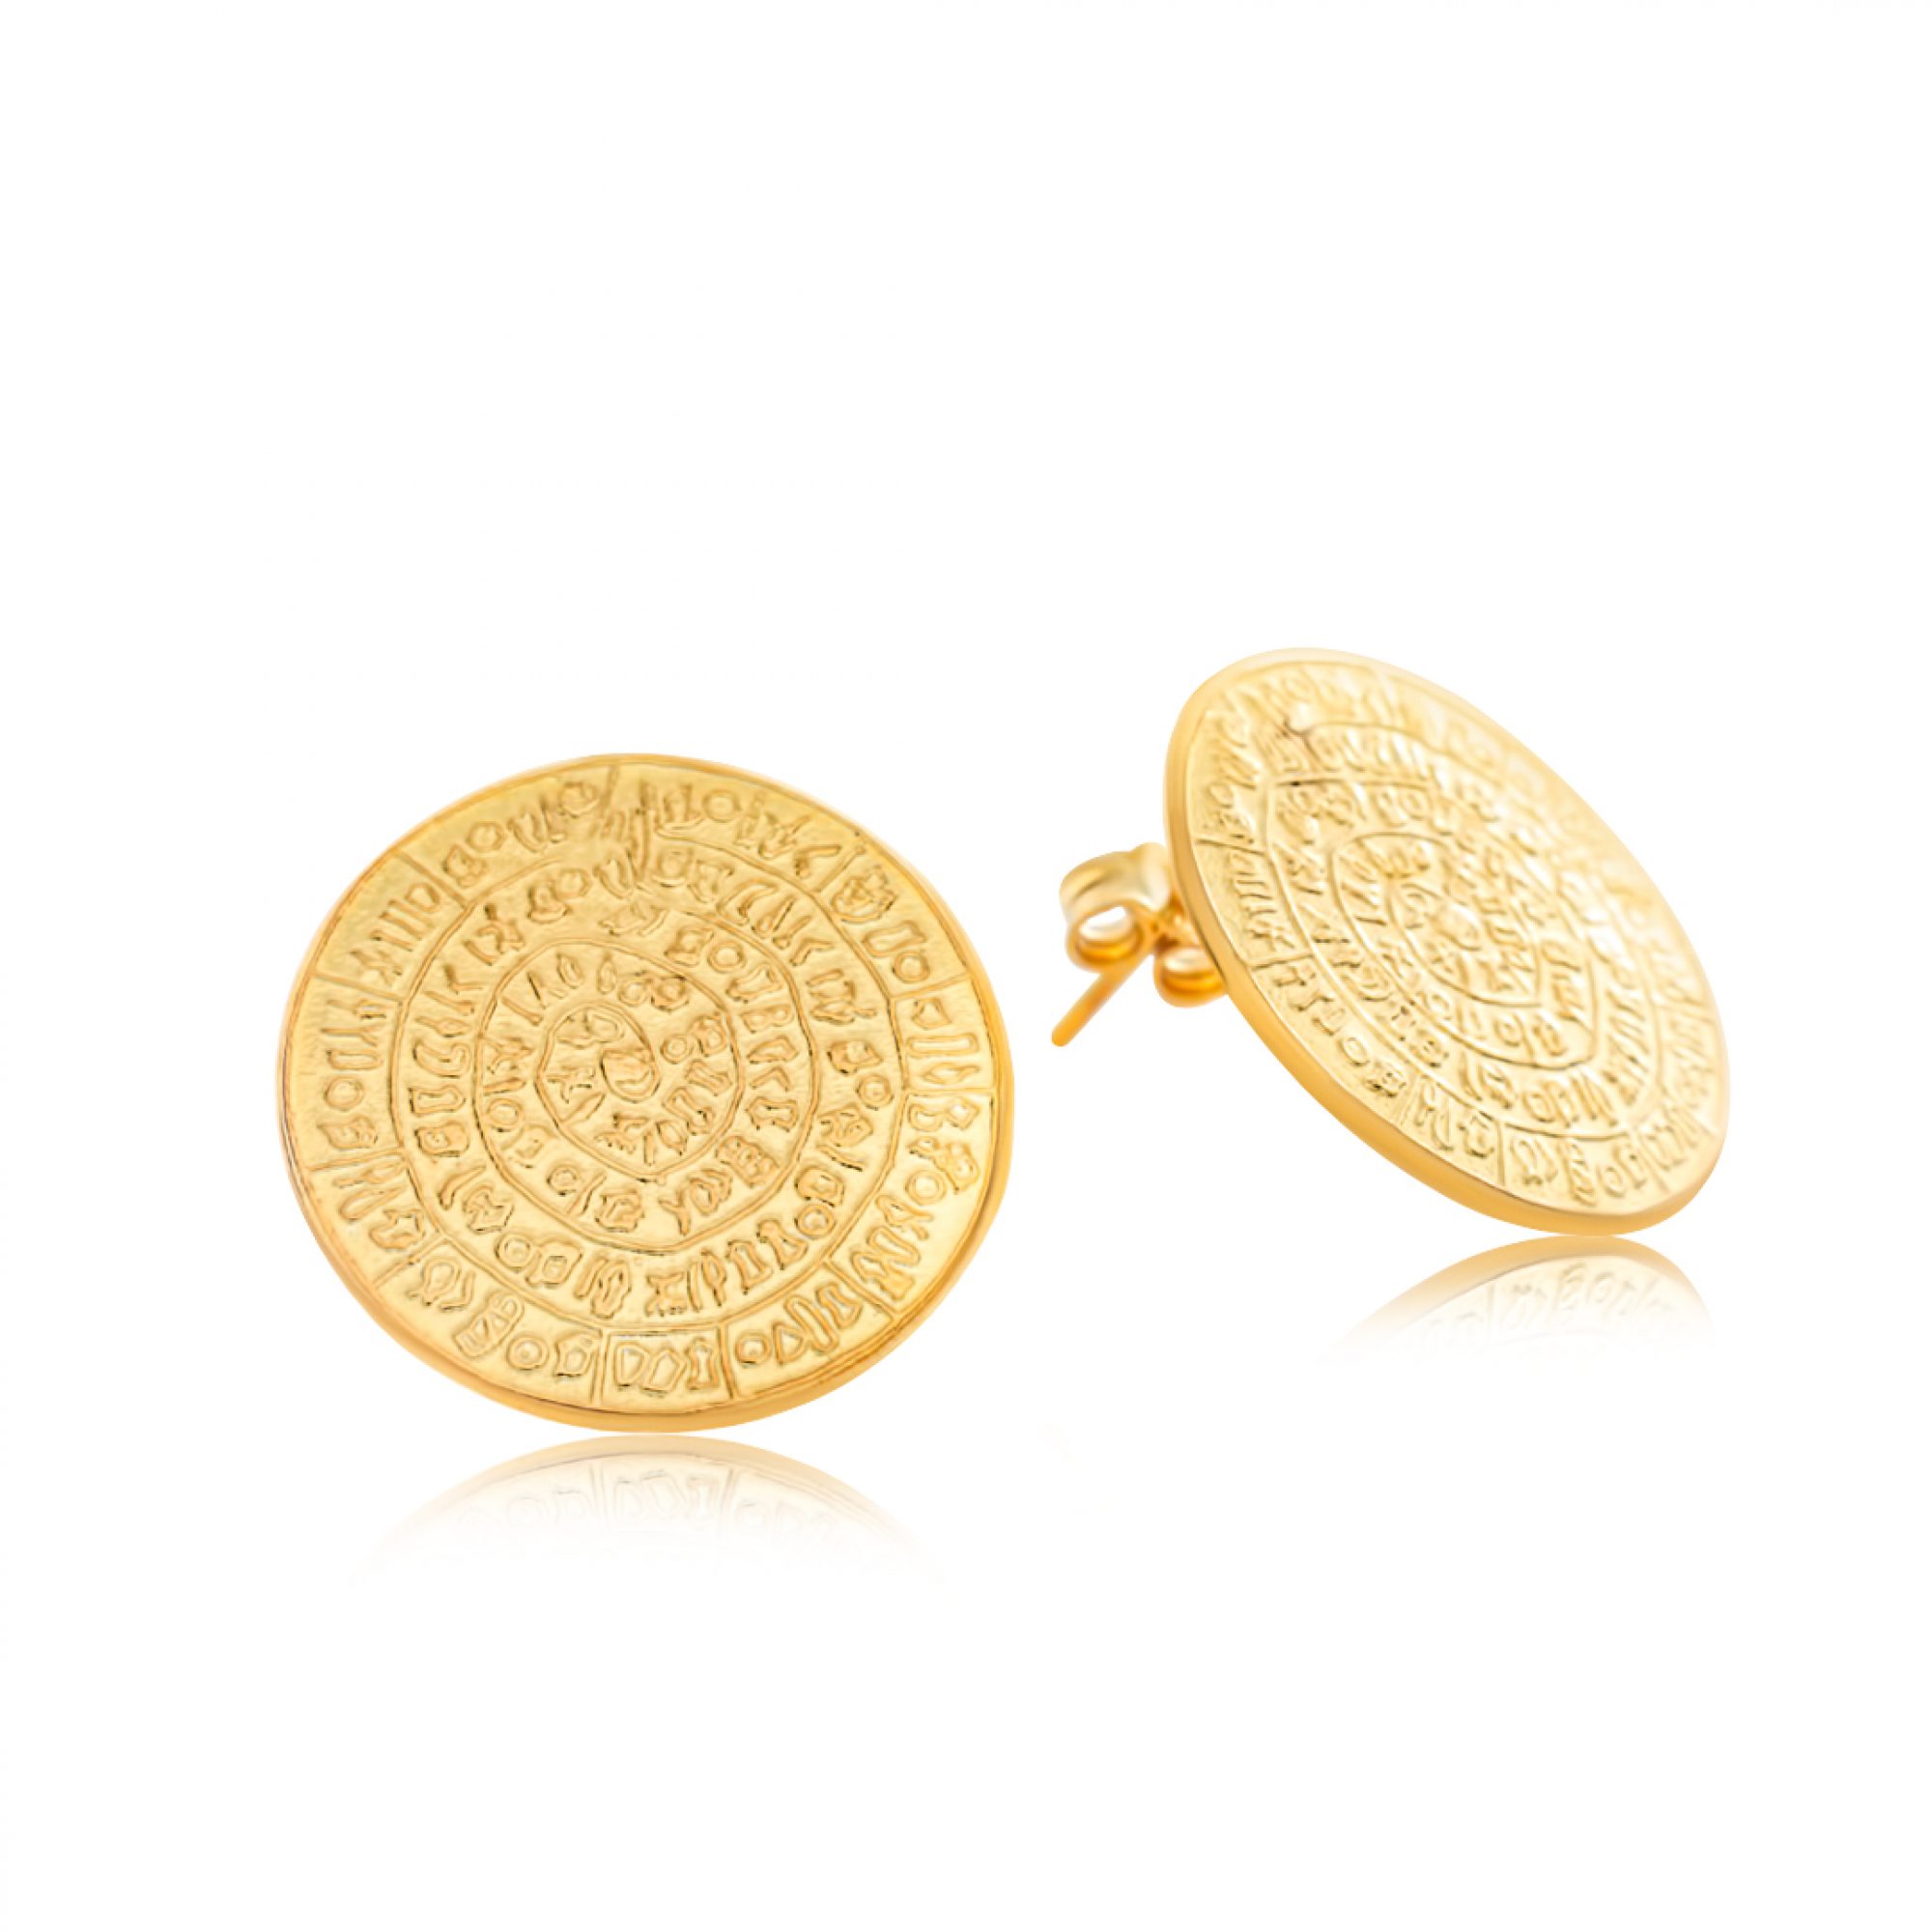 Gold plated Faistos Disc earrings